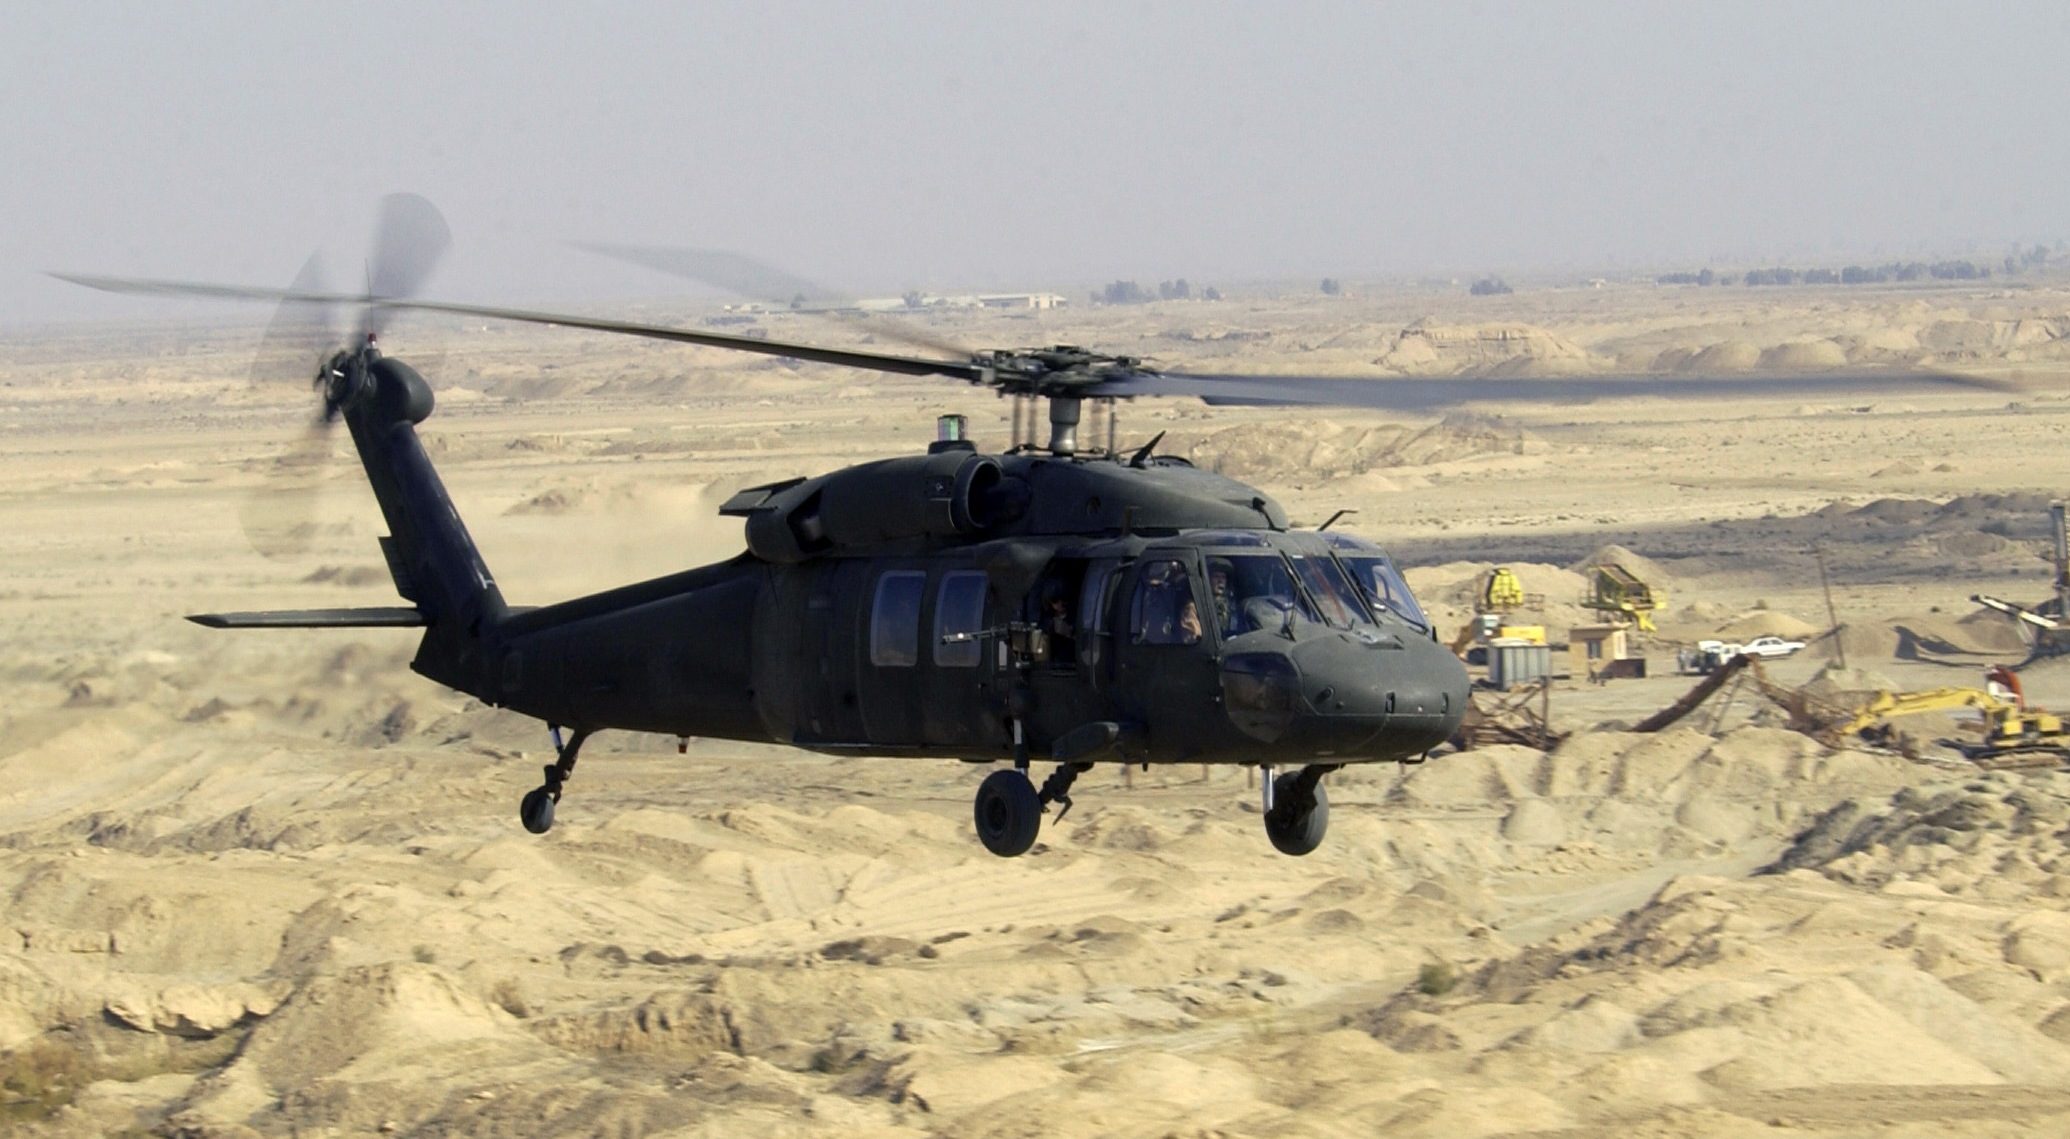 Sikorsky UH-60 Black Hawk helicopter